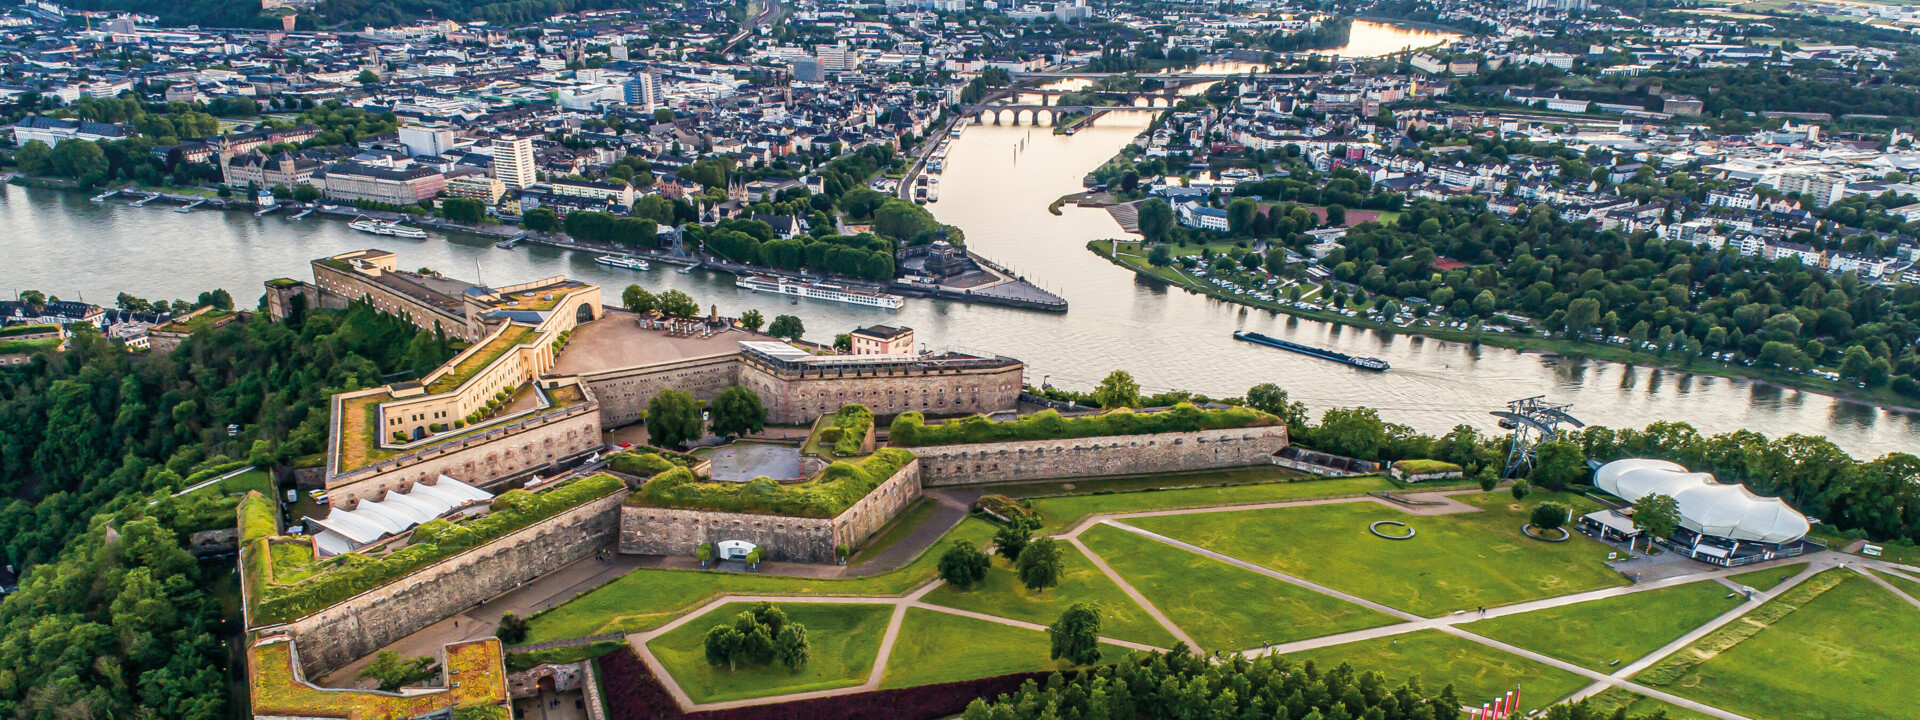 Luftaufnahme von der Festung Ehrenbreitstein mit dem Deutschen Eck, Rhein, Mosel und Koblenz im Hintergrund ©Adobe Stock